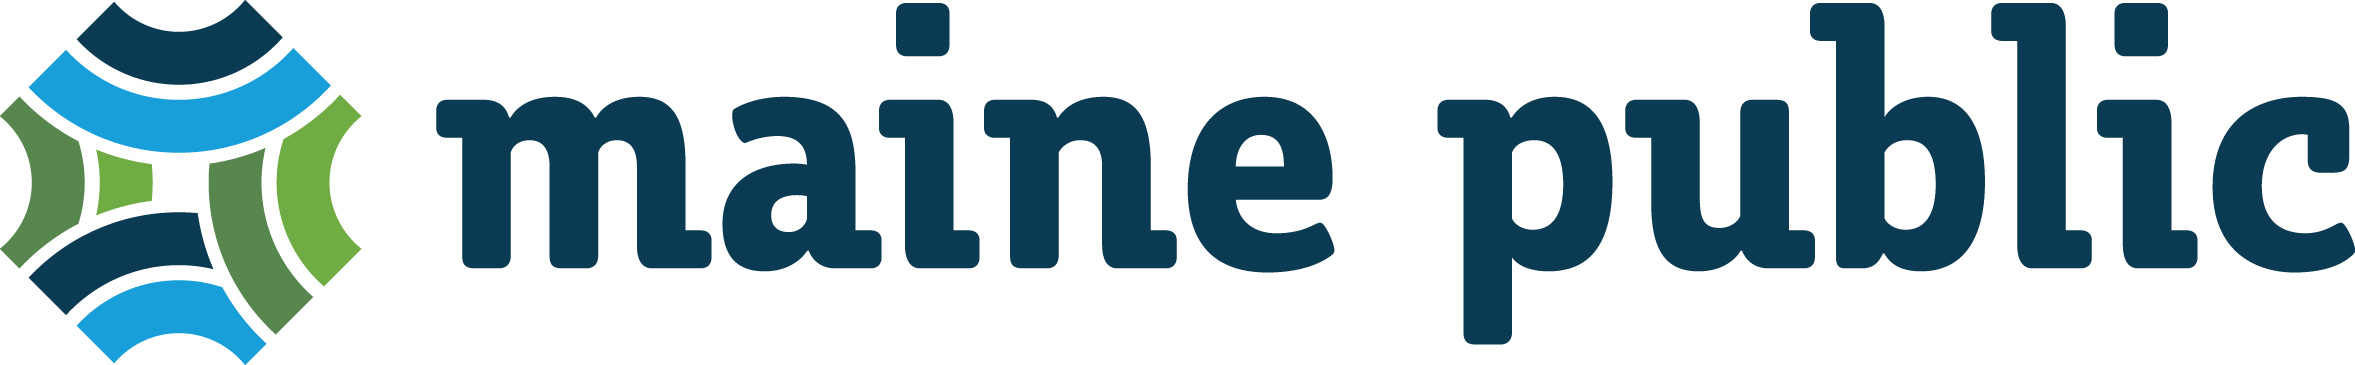 Maine Public logo